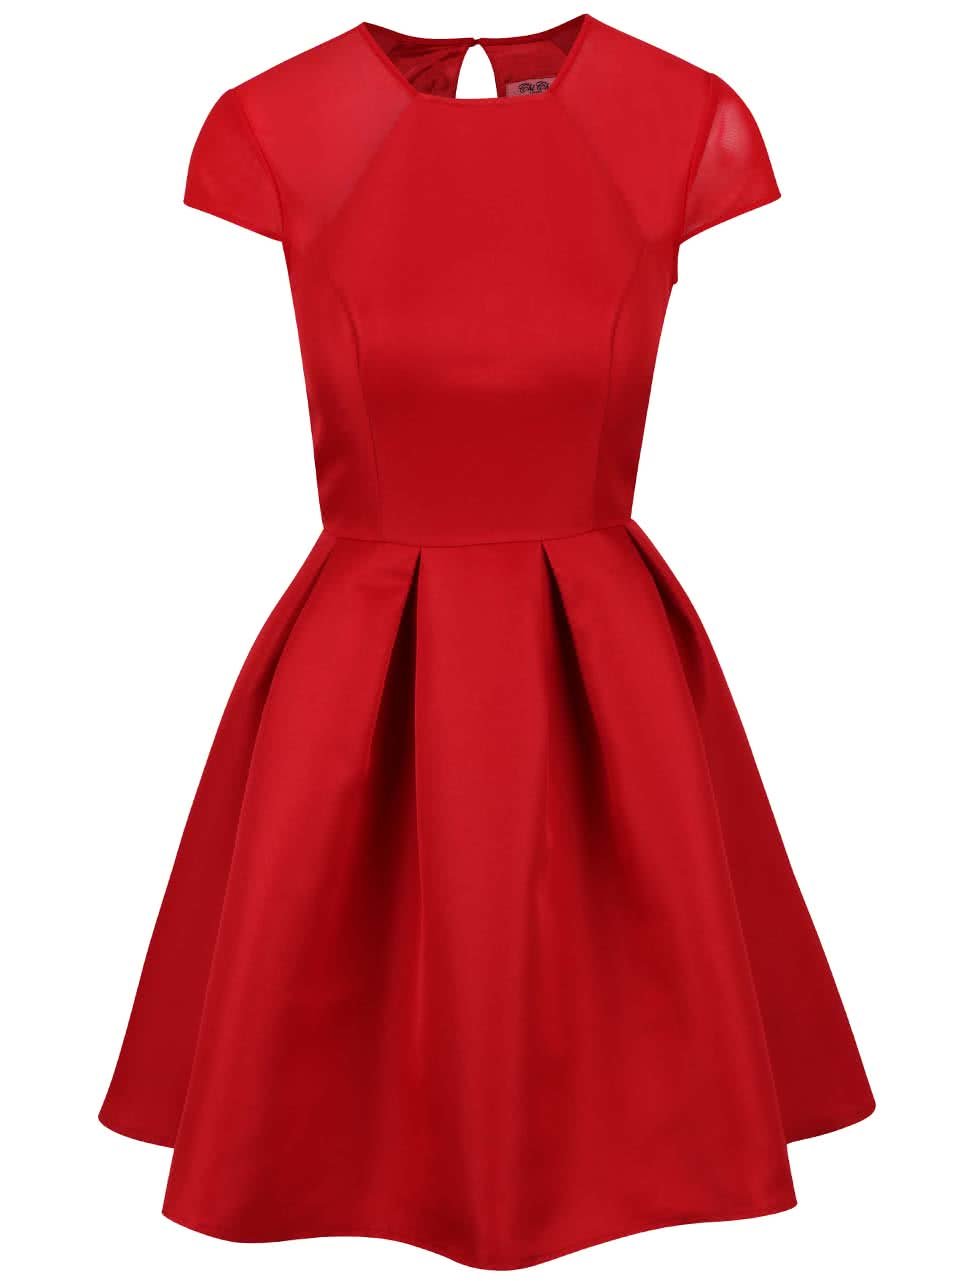 Červené šaty se skládanou sukní Chi Chi London Marley